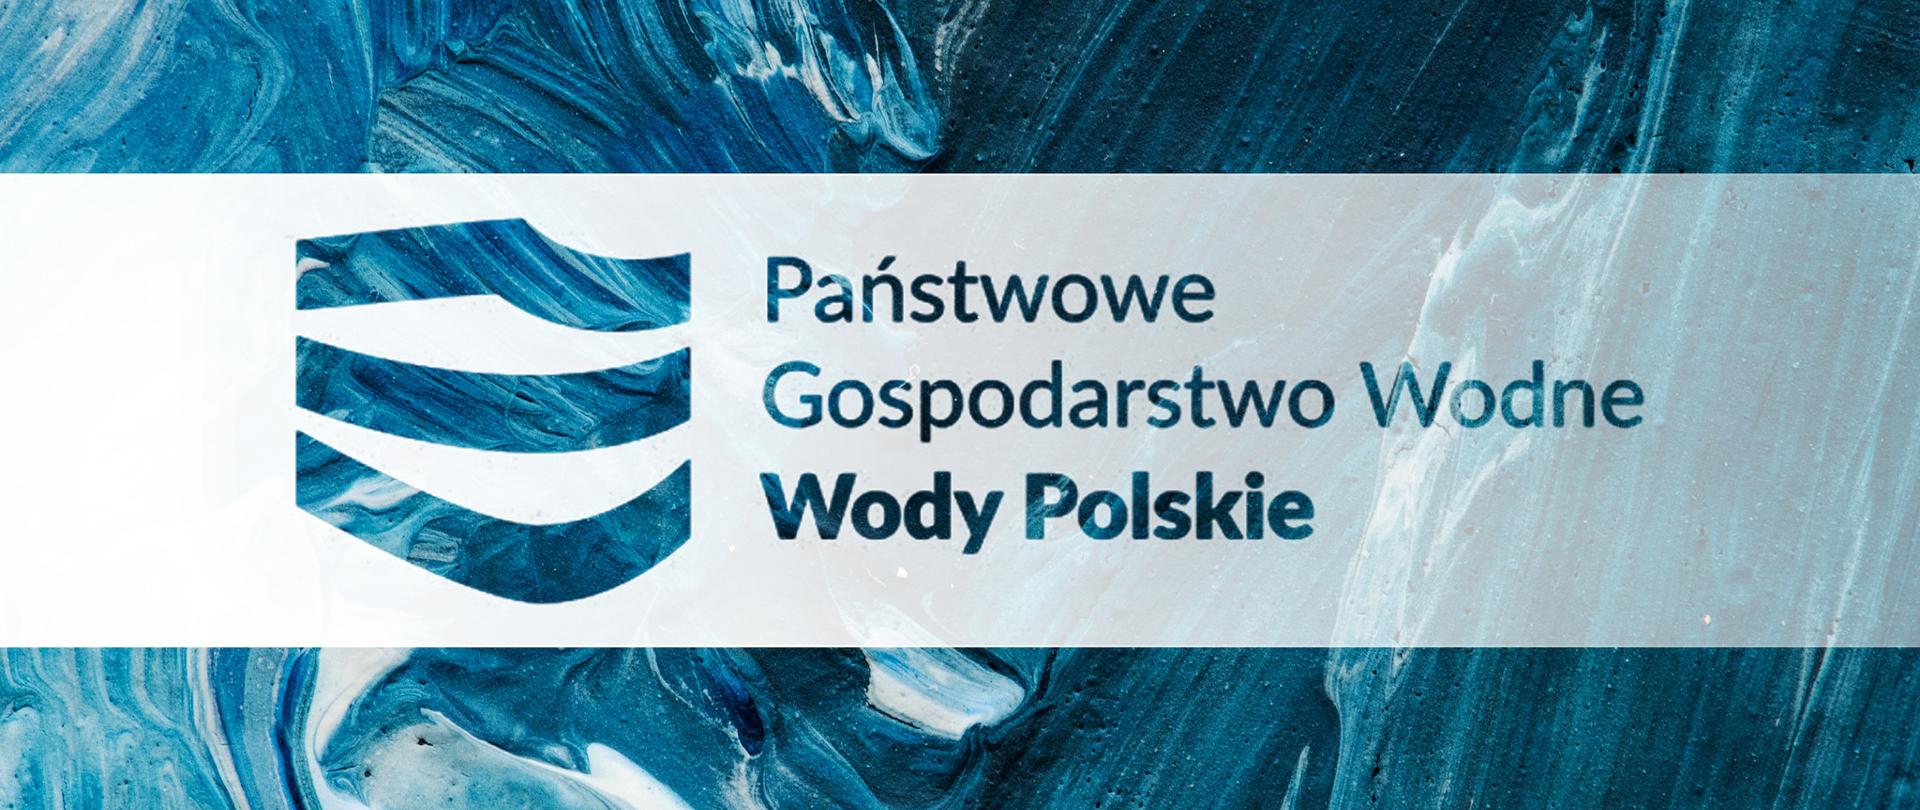 PGW Wody Polskie - logo w poziomie na niebieskim tle